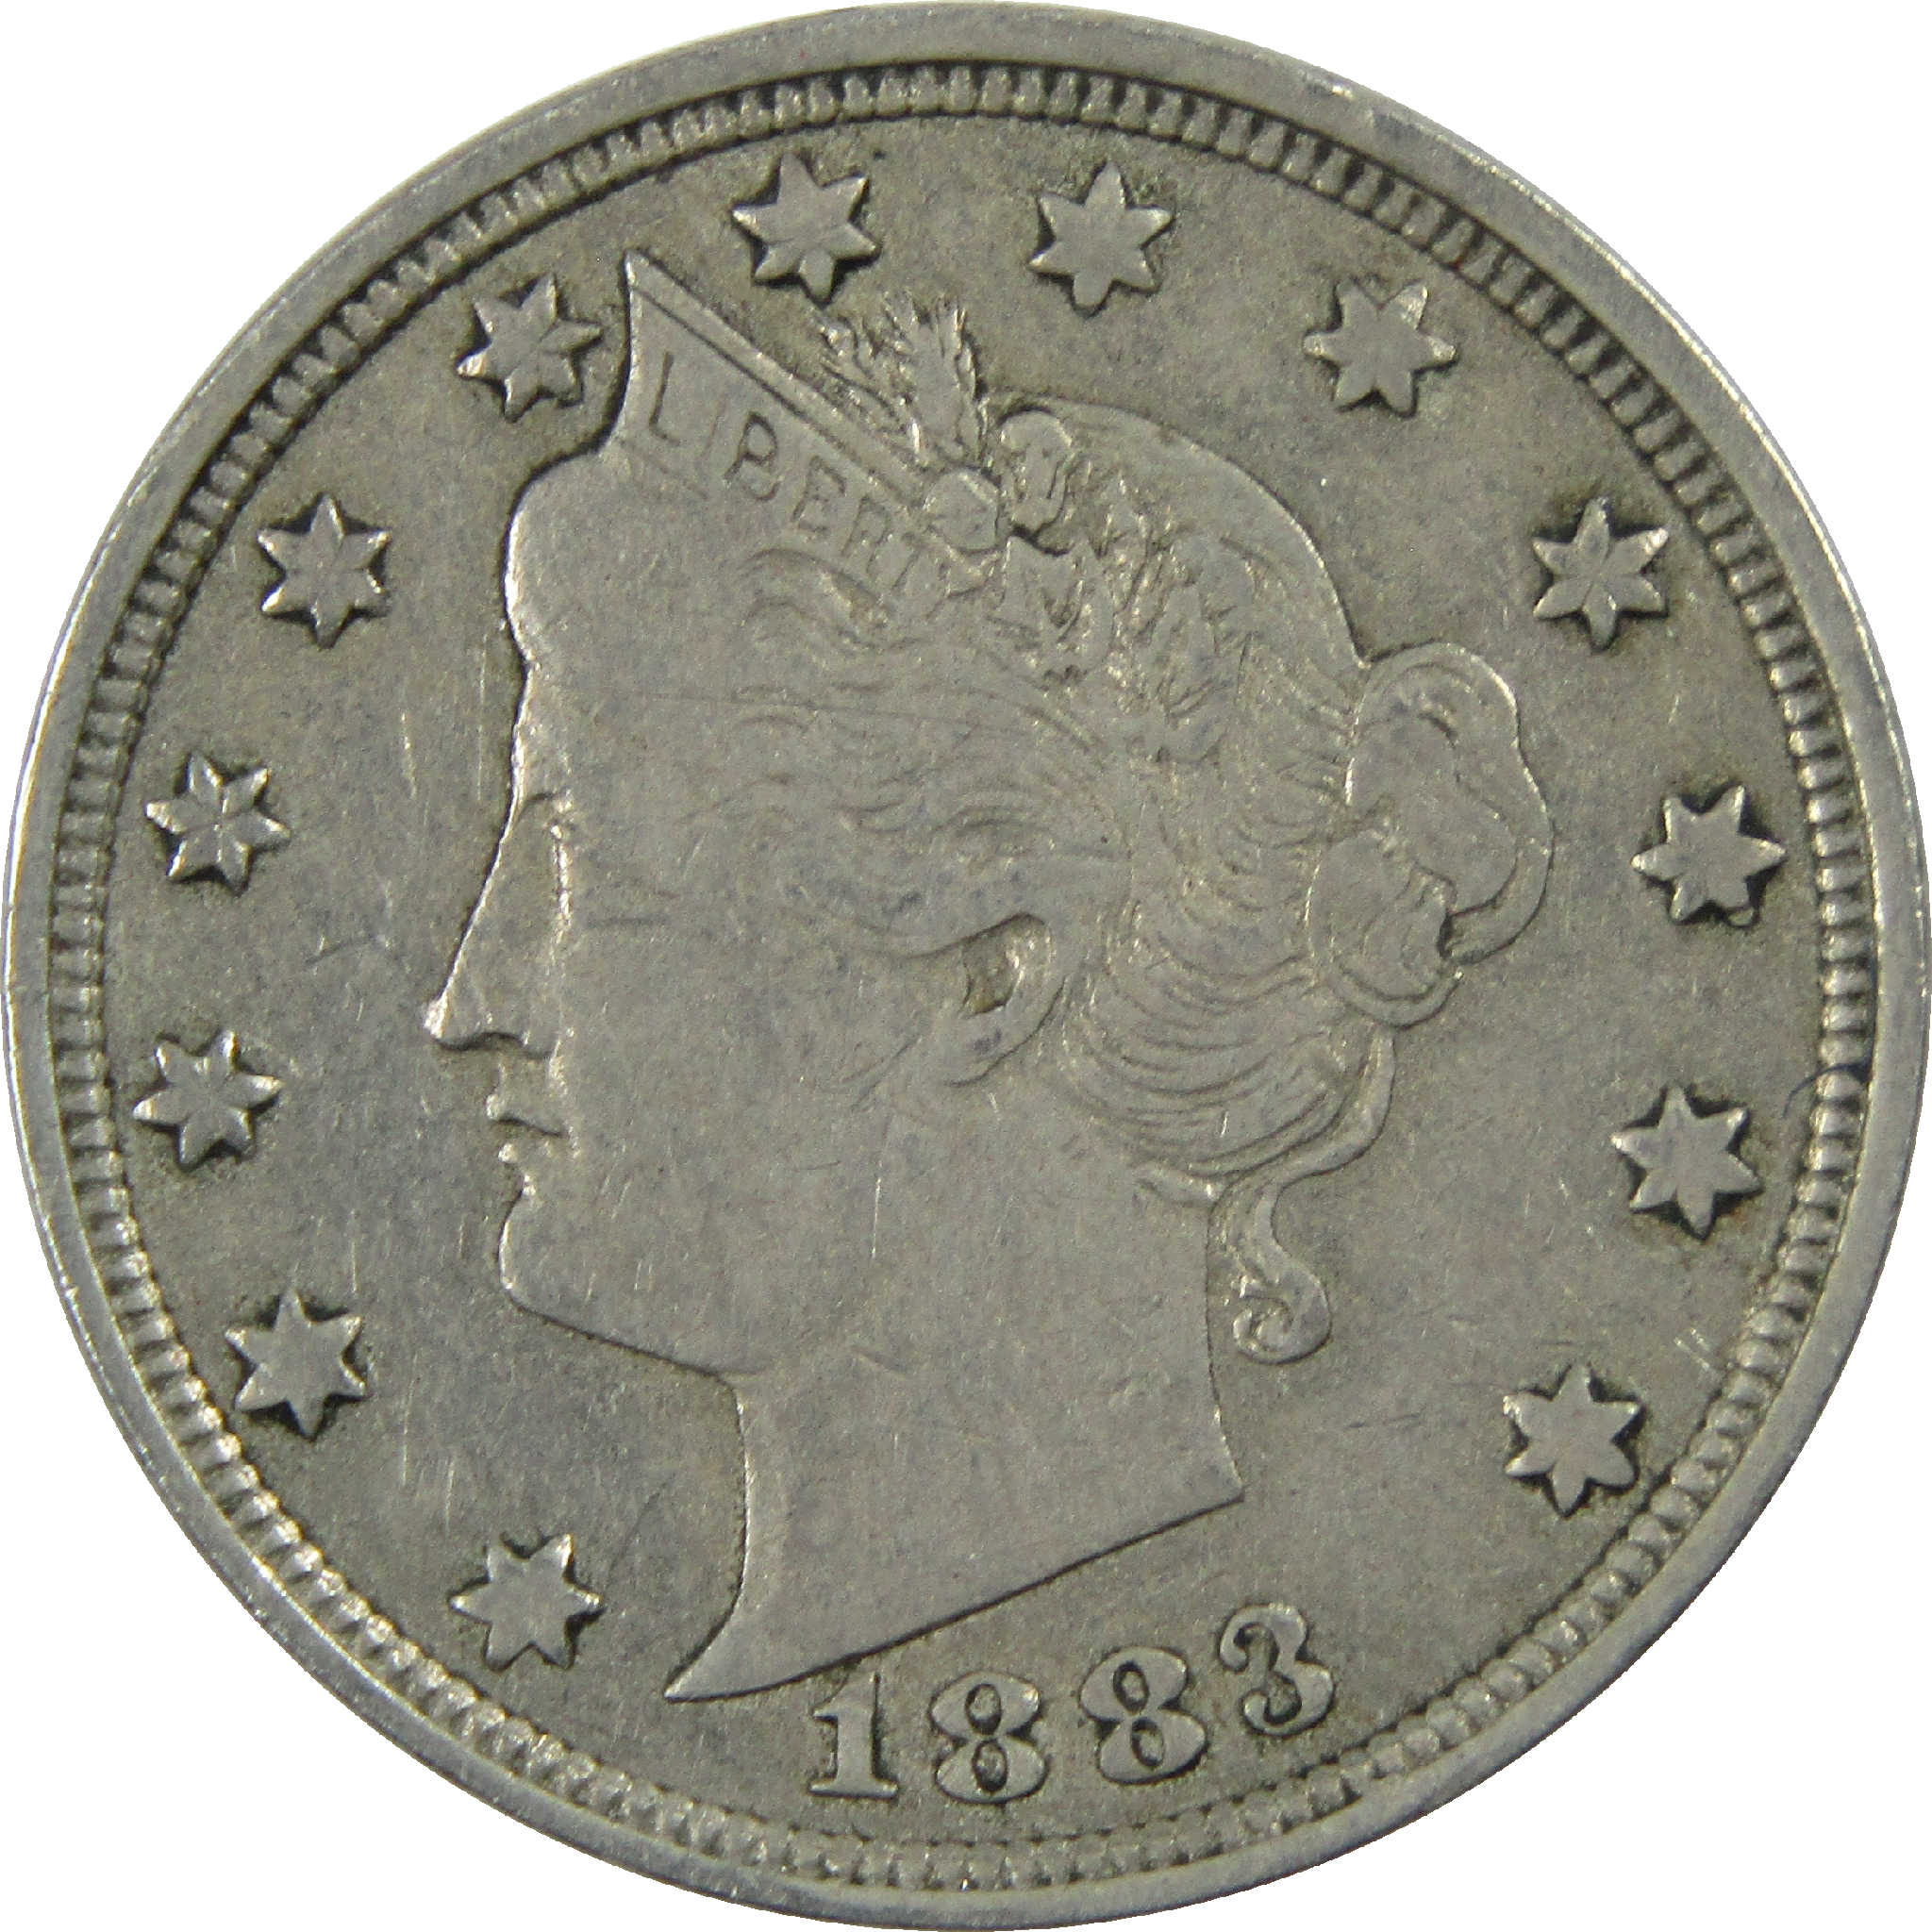 1883 No Cents Liberty Head V Nickel VF Very Fine 5c Coin SKU:I12164